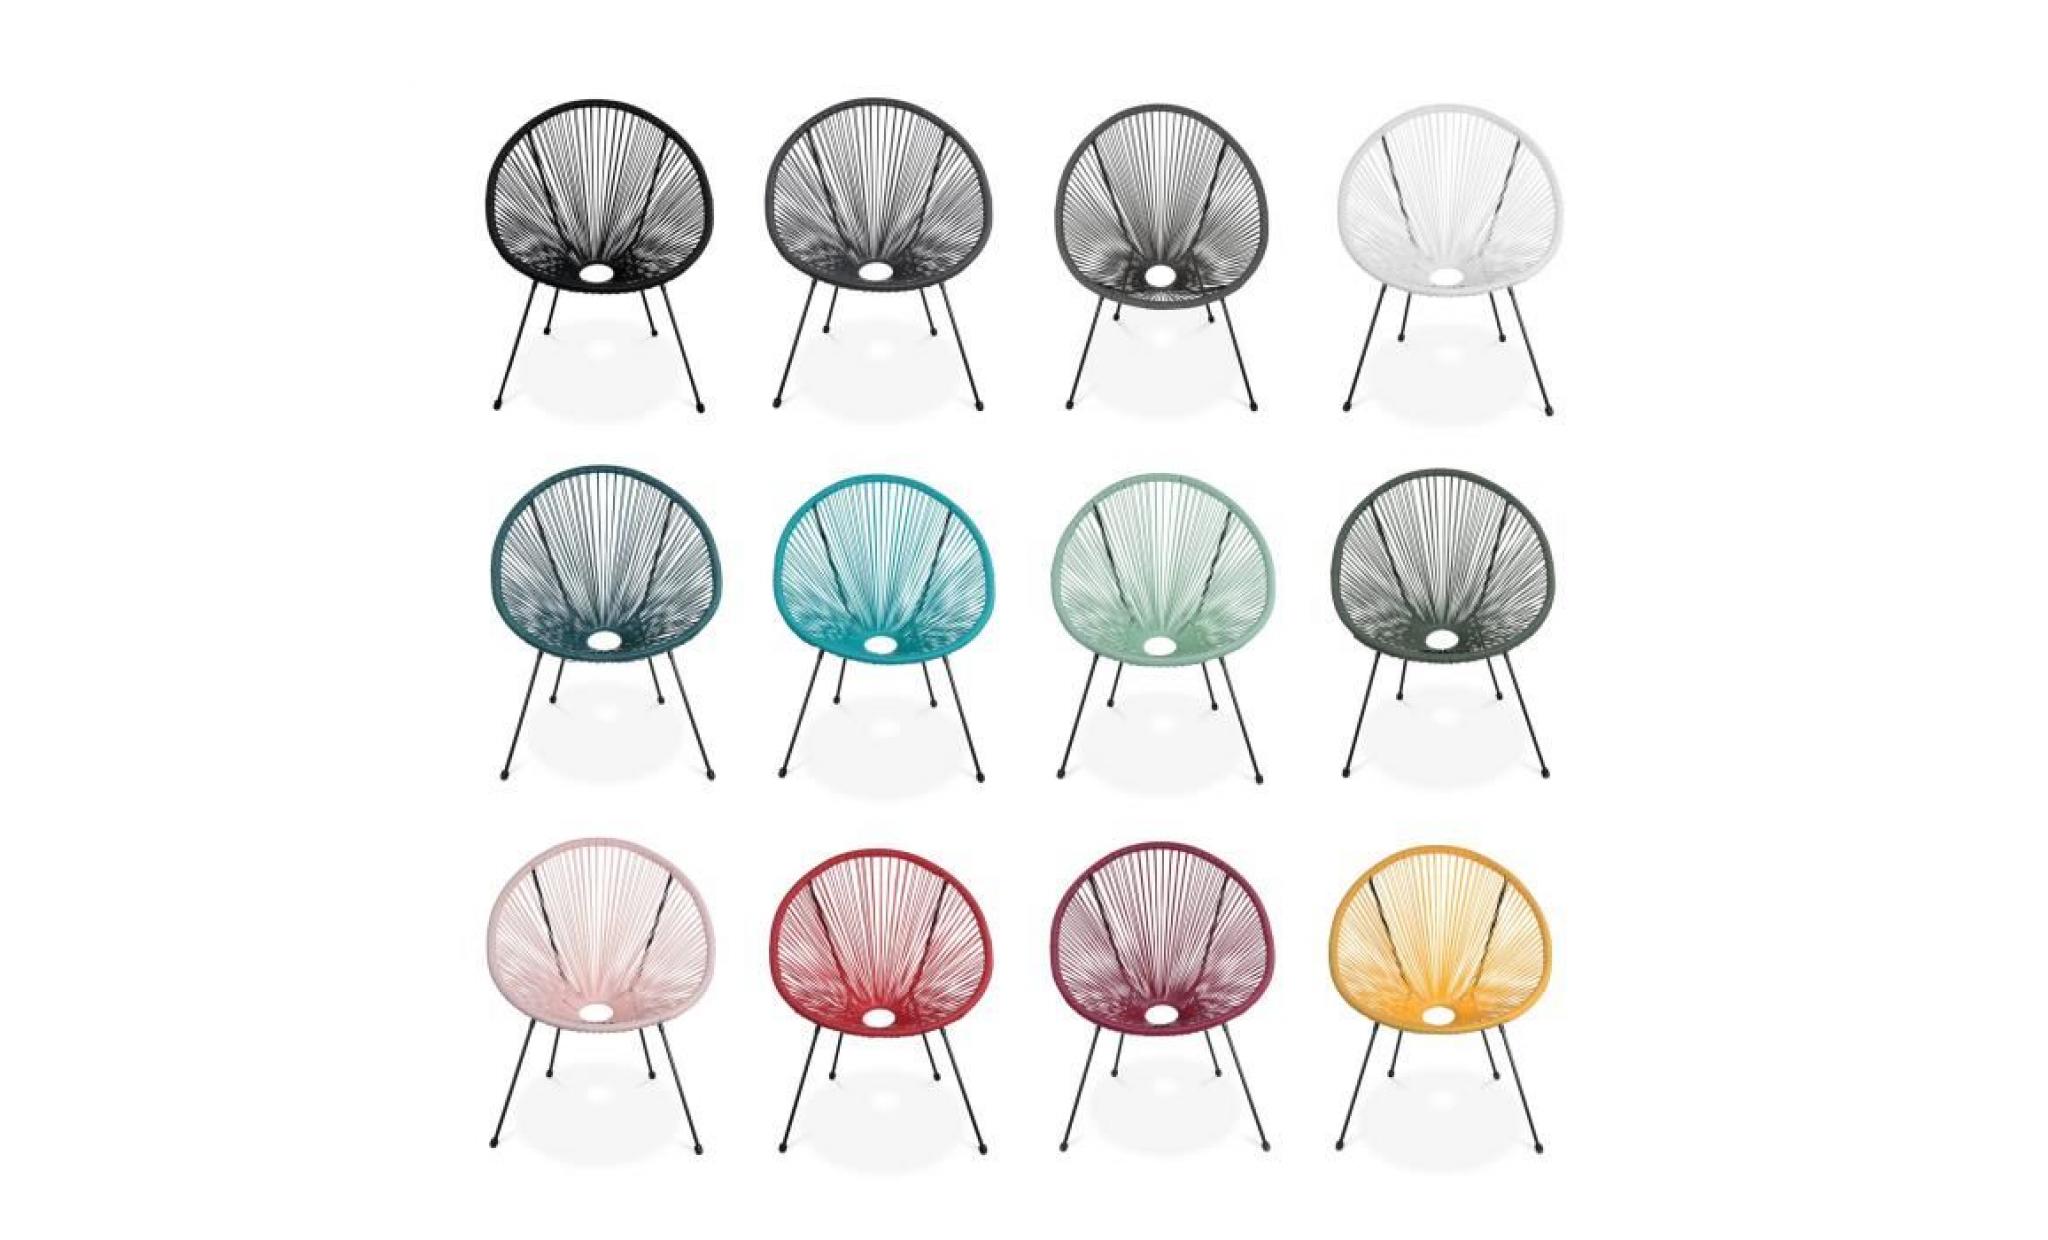 lot de 2 fauteuils design oeuf   acapulco bleu canard   fauteuils 4 pieds design rétro, cordage plastique, intérieur / extérieur pas cher